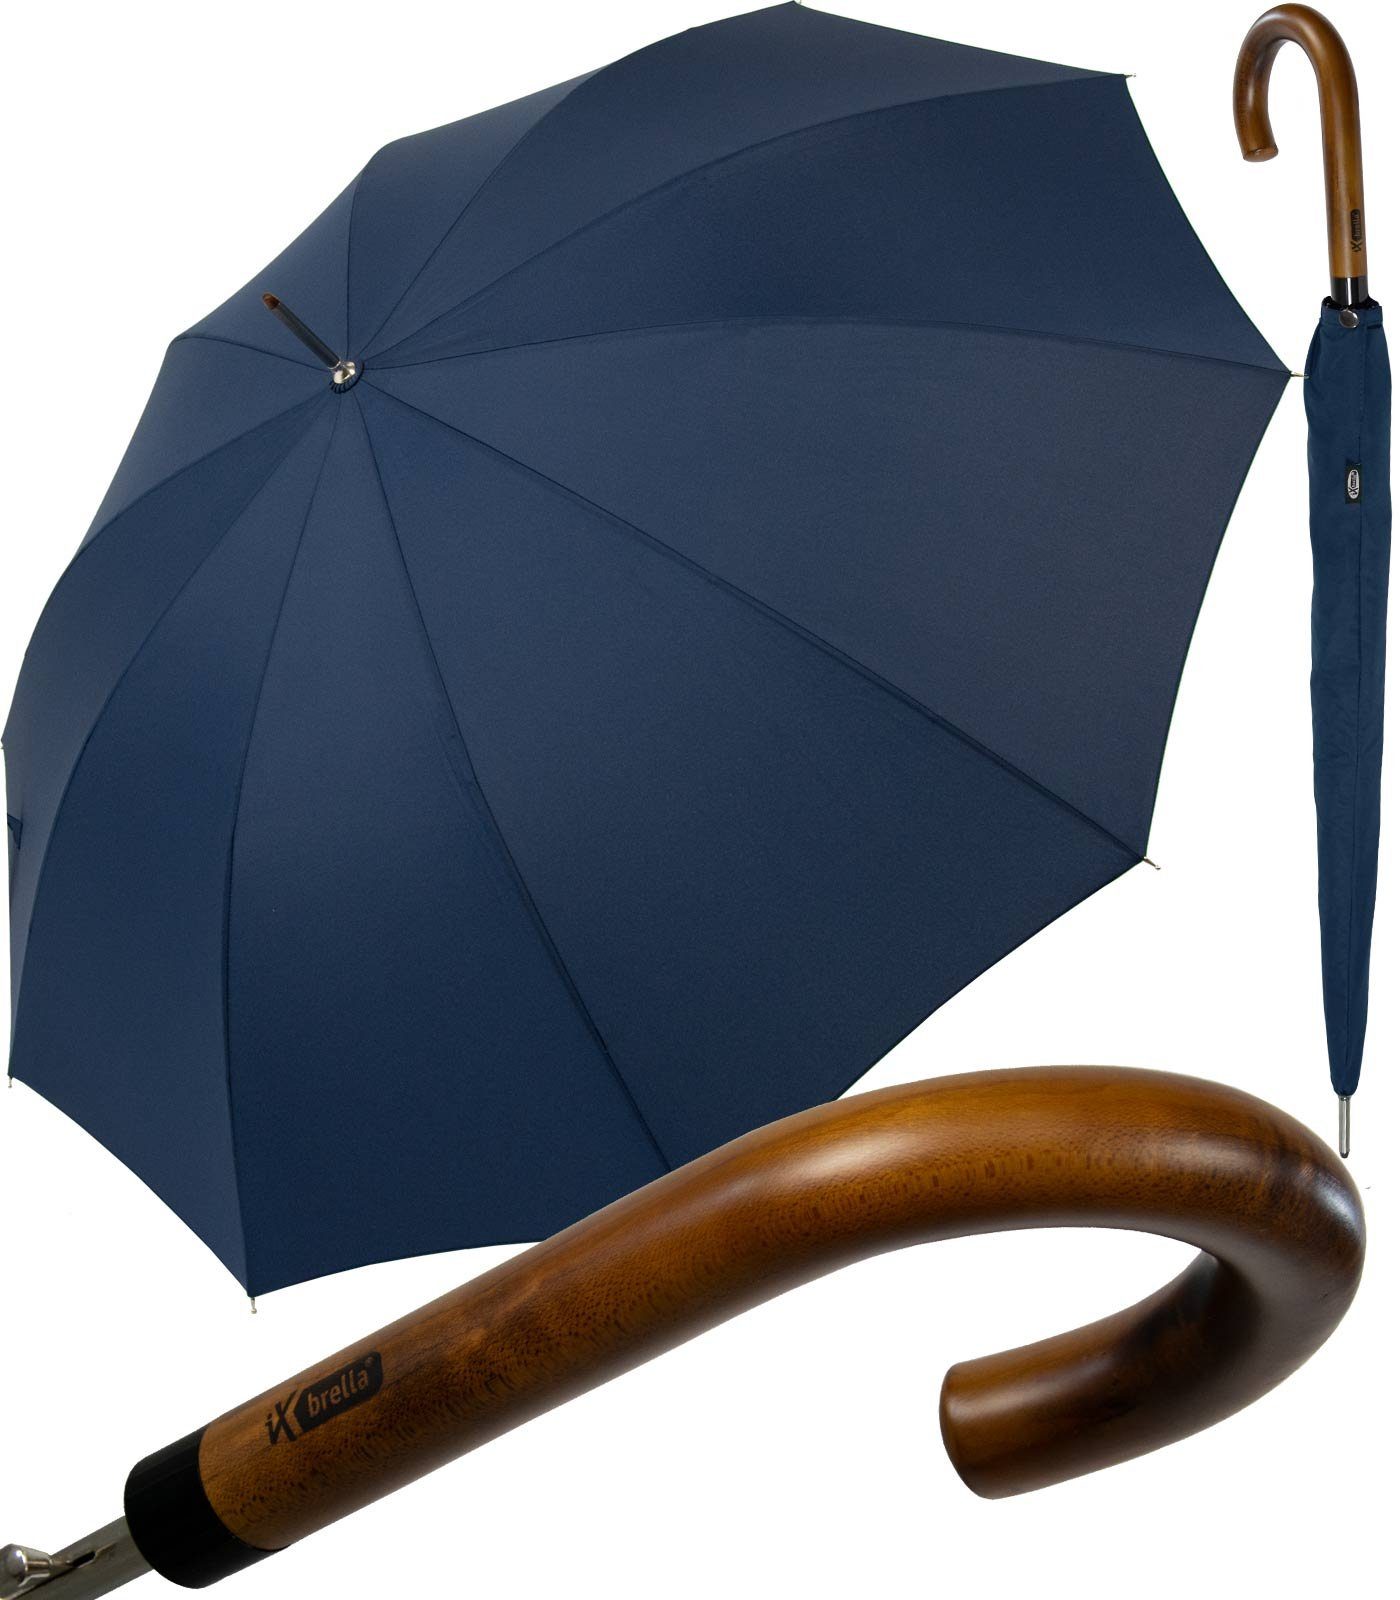 Herren-Schirm Automatik dunkelblau Quality Langregenschirm iX-brella Echth, mit klassisch-edel High und